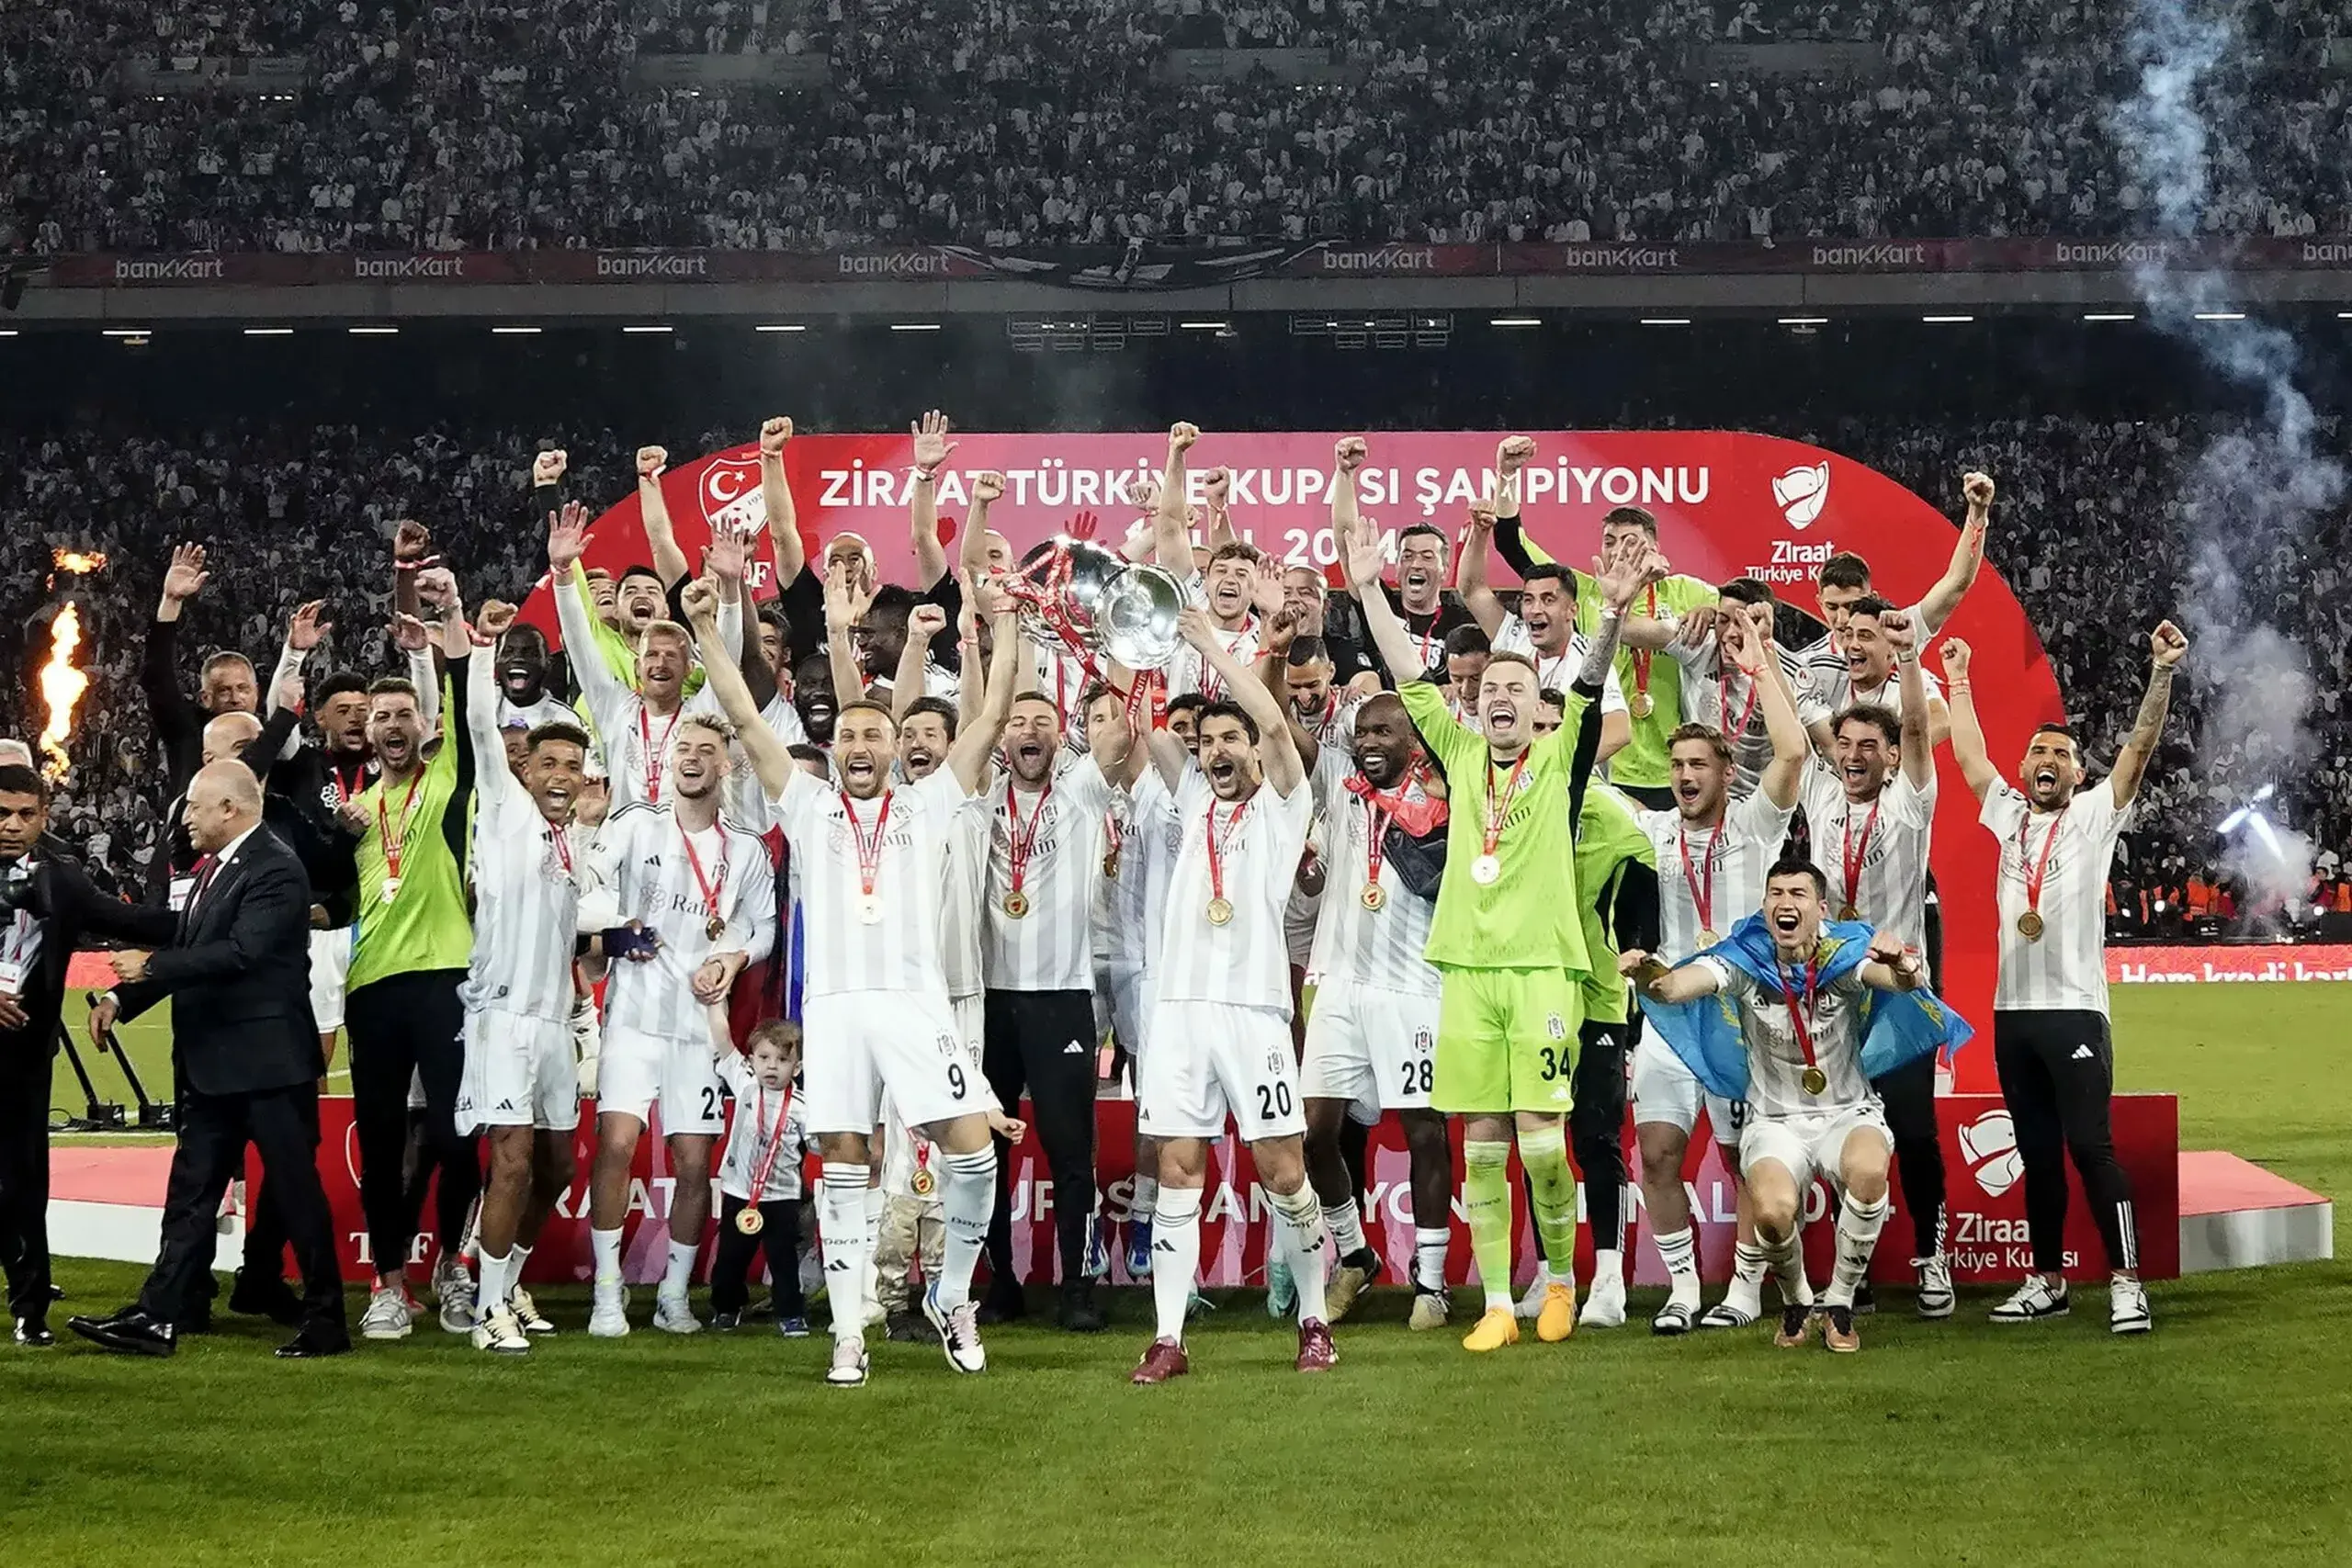 Ziraat Türkiye Kupası'nı Beşiktaş kazandı! Final maçı 'Yok böyle bir maç' dedirtti